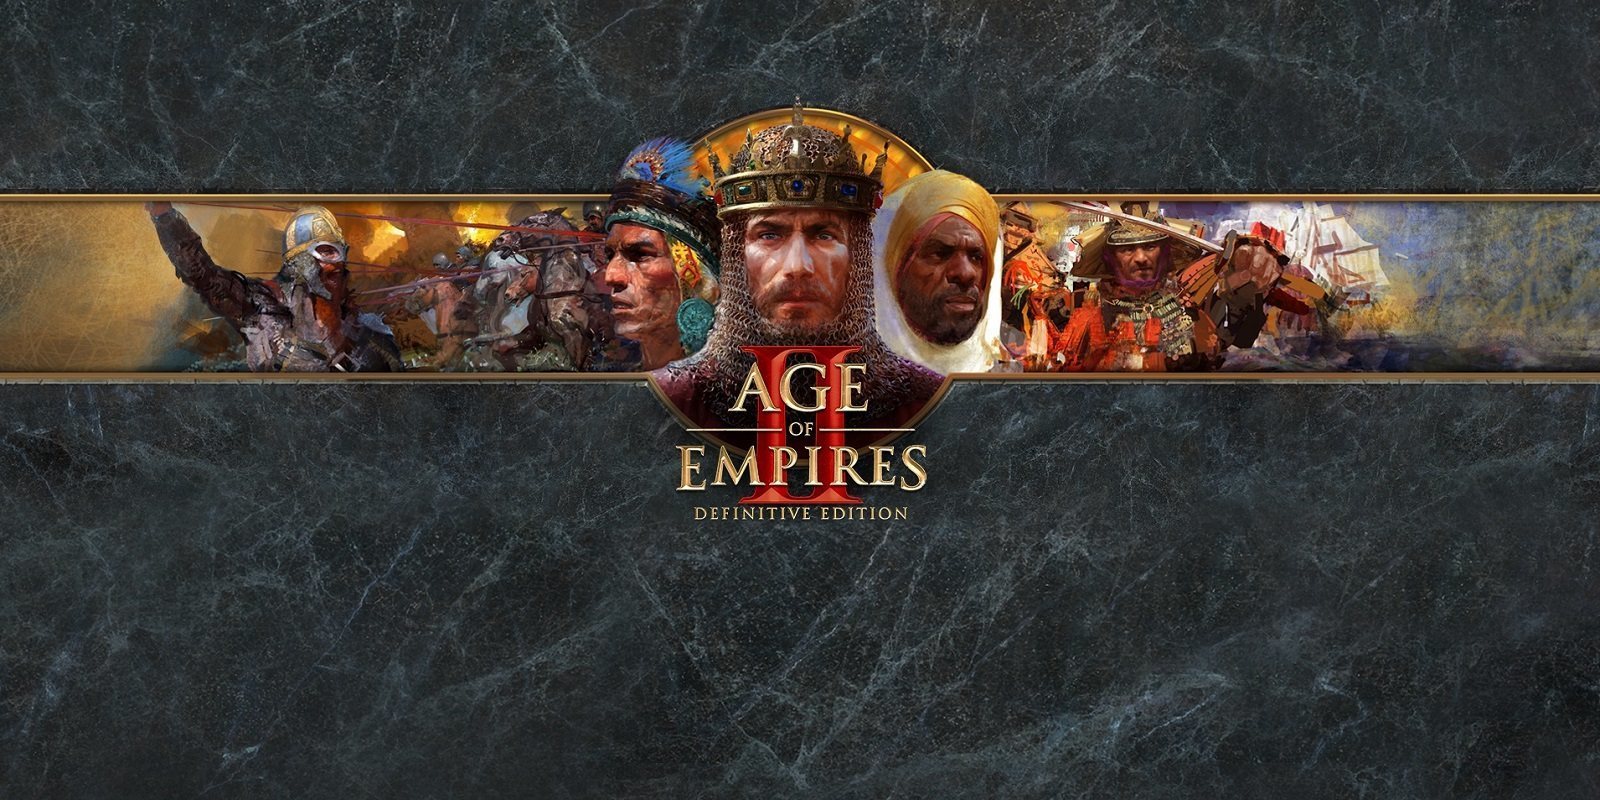 Análisis de 'Age of Empires II: Definitive Edition' para PC, la historia continúa